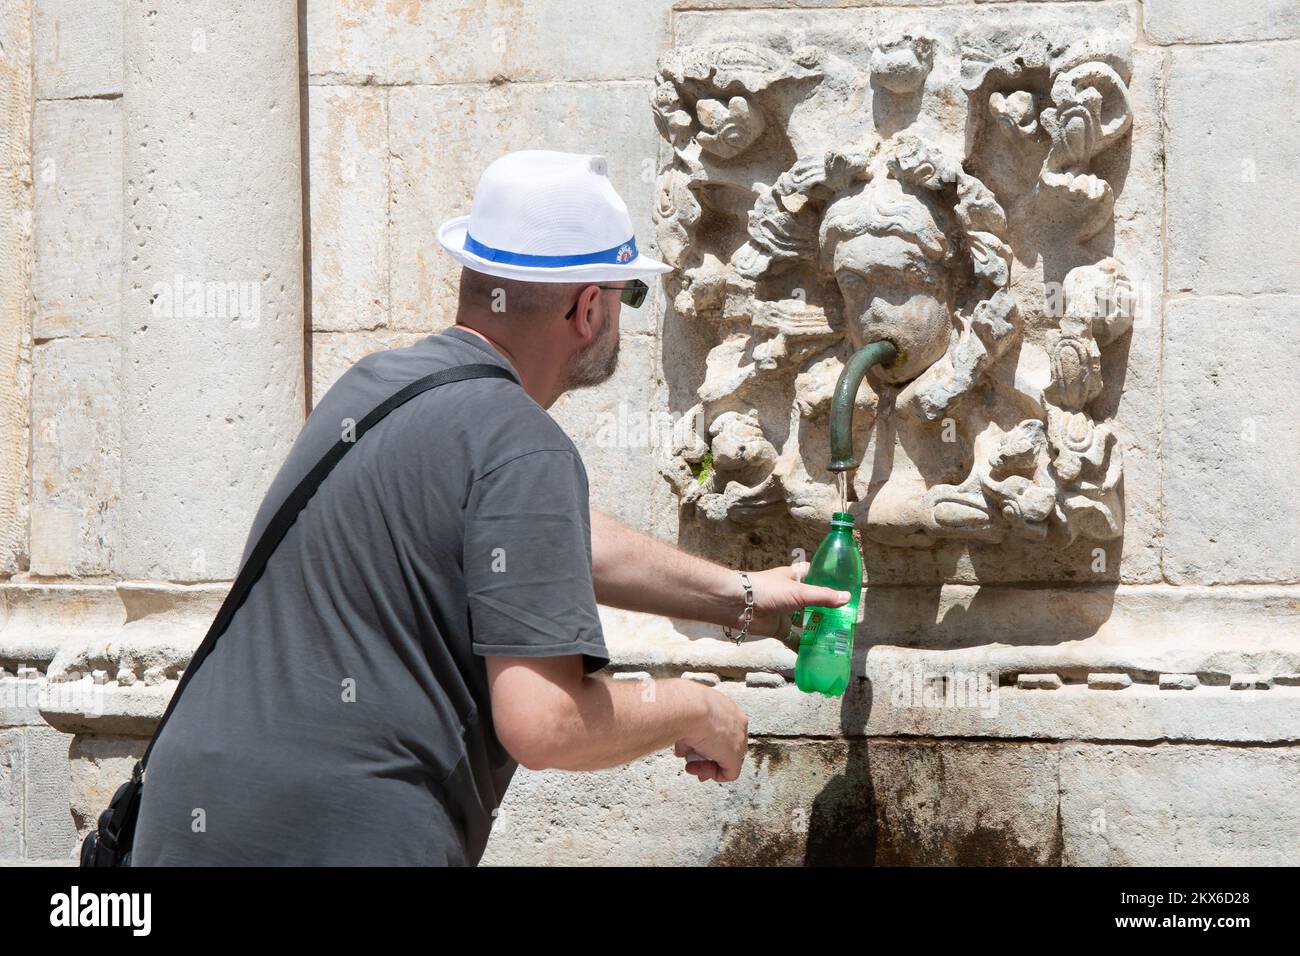 04.06.2018., Kroatien, Dubrovnik - die Hitze im Herzen des Sommers veranlasste die Gäste, die Brunnen der Stadt vorübergehend wiederzubeleben. Foto: Grgo Jelavic/PIXSELL Stockfoto